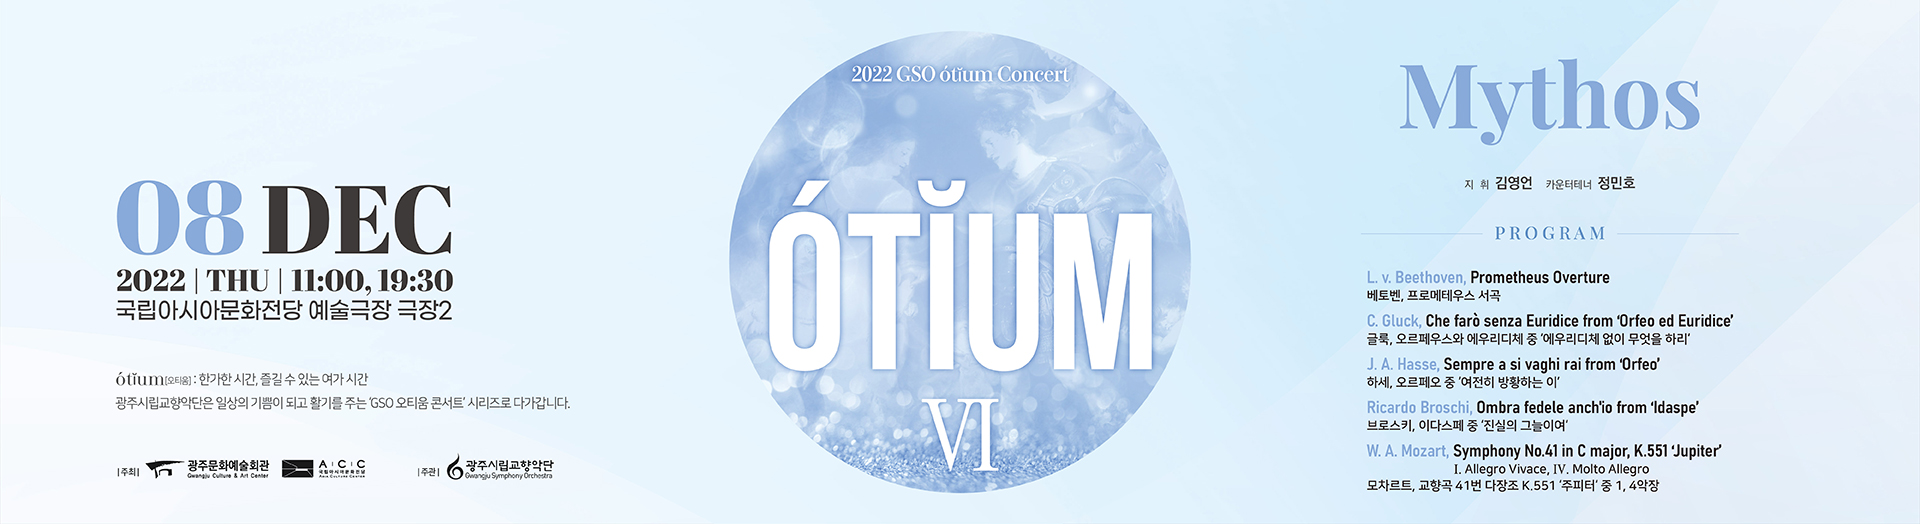 حفل الراحة (Otium) VI بواسطة أوركسترا غوانغجو الفيلهارمونية - 'Mythos'